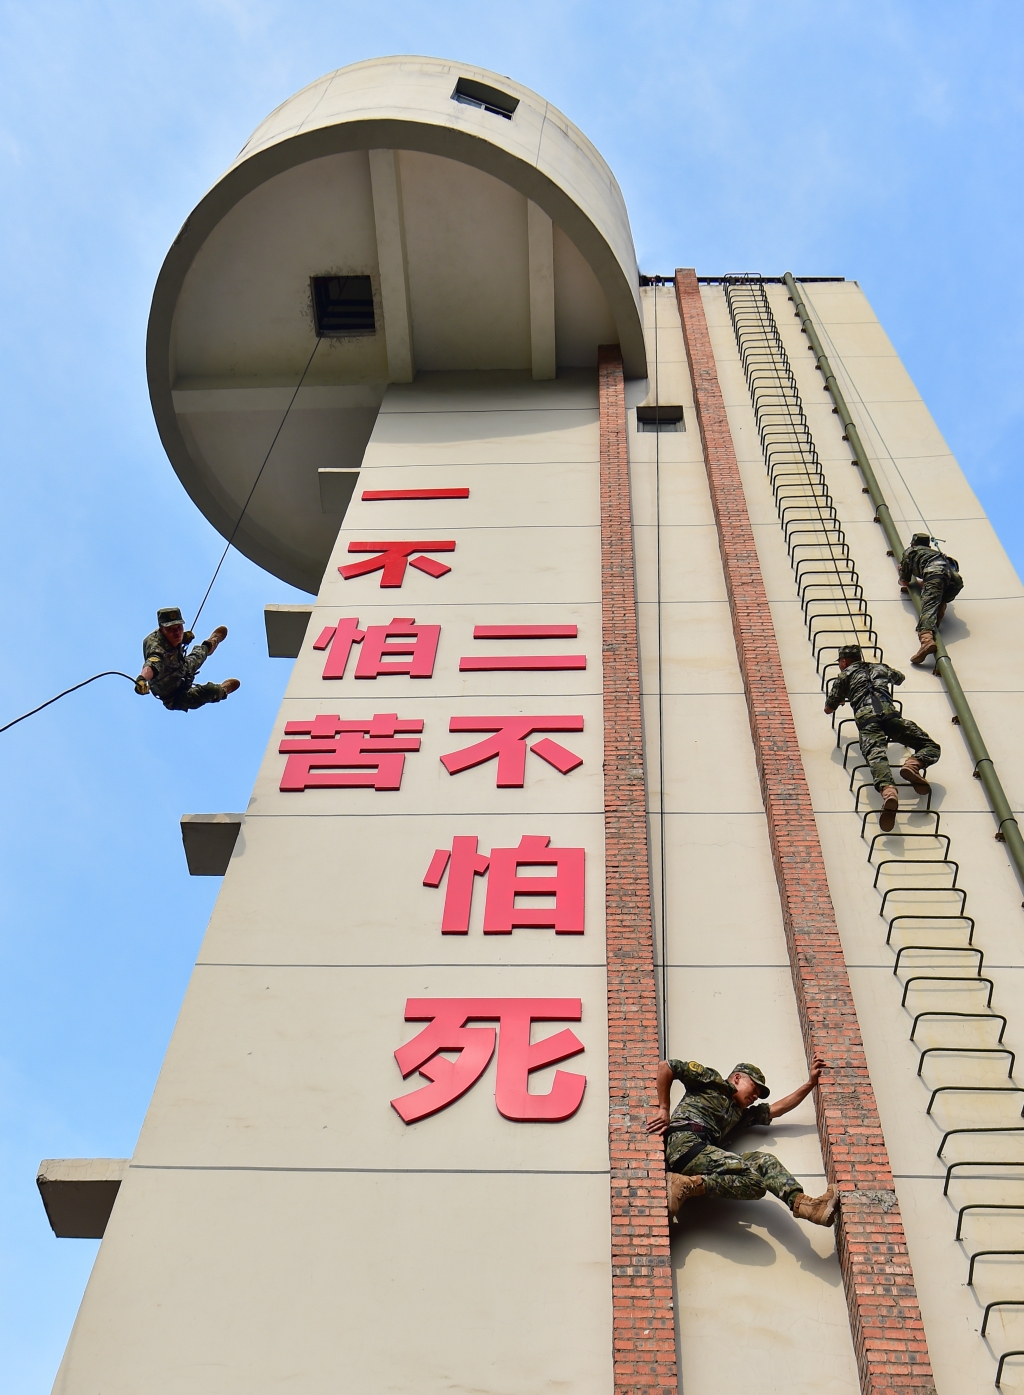 武警战士在进行高空索降及高楼攀登训练。